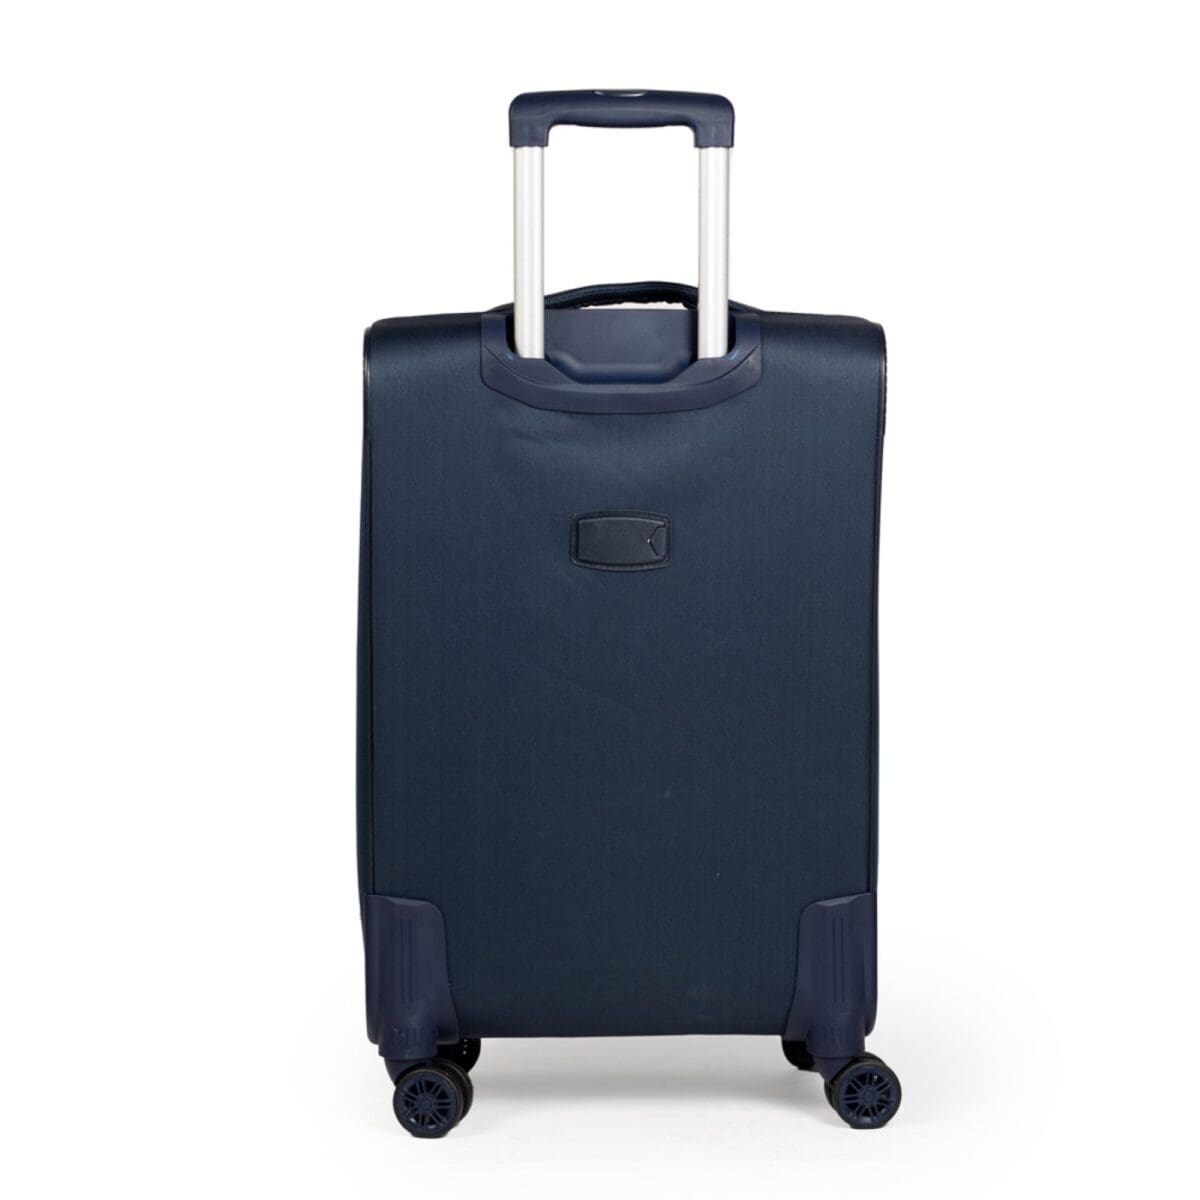 Πίσω πλευρά βαλίτσας με ταμπελάκι για στοιχεία σε μπλε χρώμα